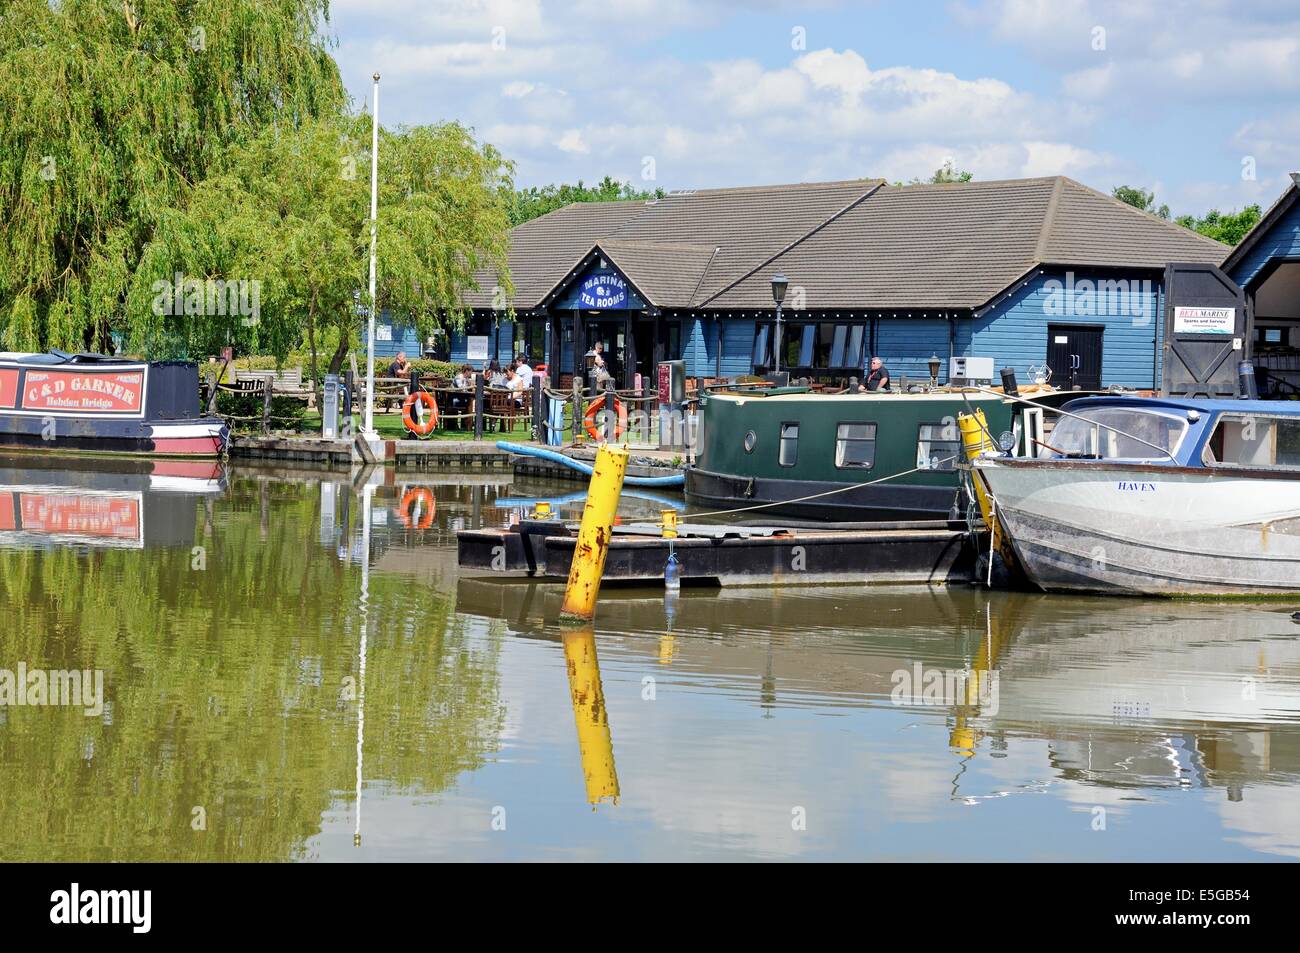 Narrowboats sur leurs amarres dans le bassin du canal avec un thé-café à l'arrière, Barton Marina, Barton-under-Needwood, UK. Banque D'Images